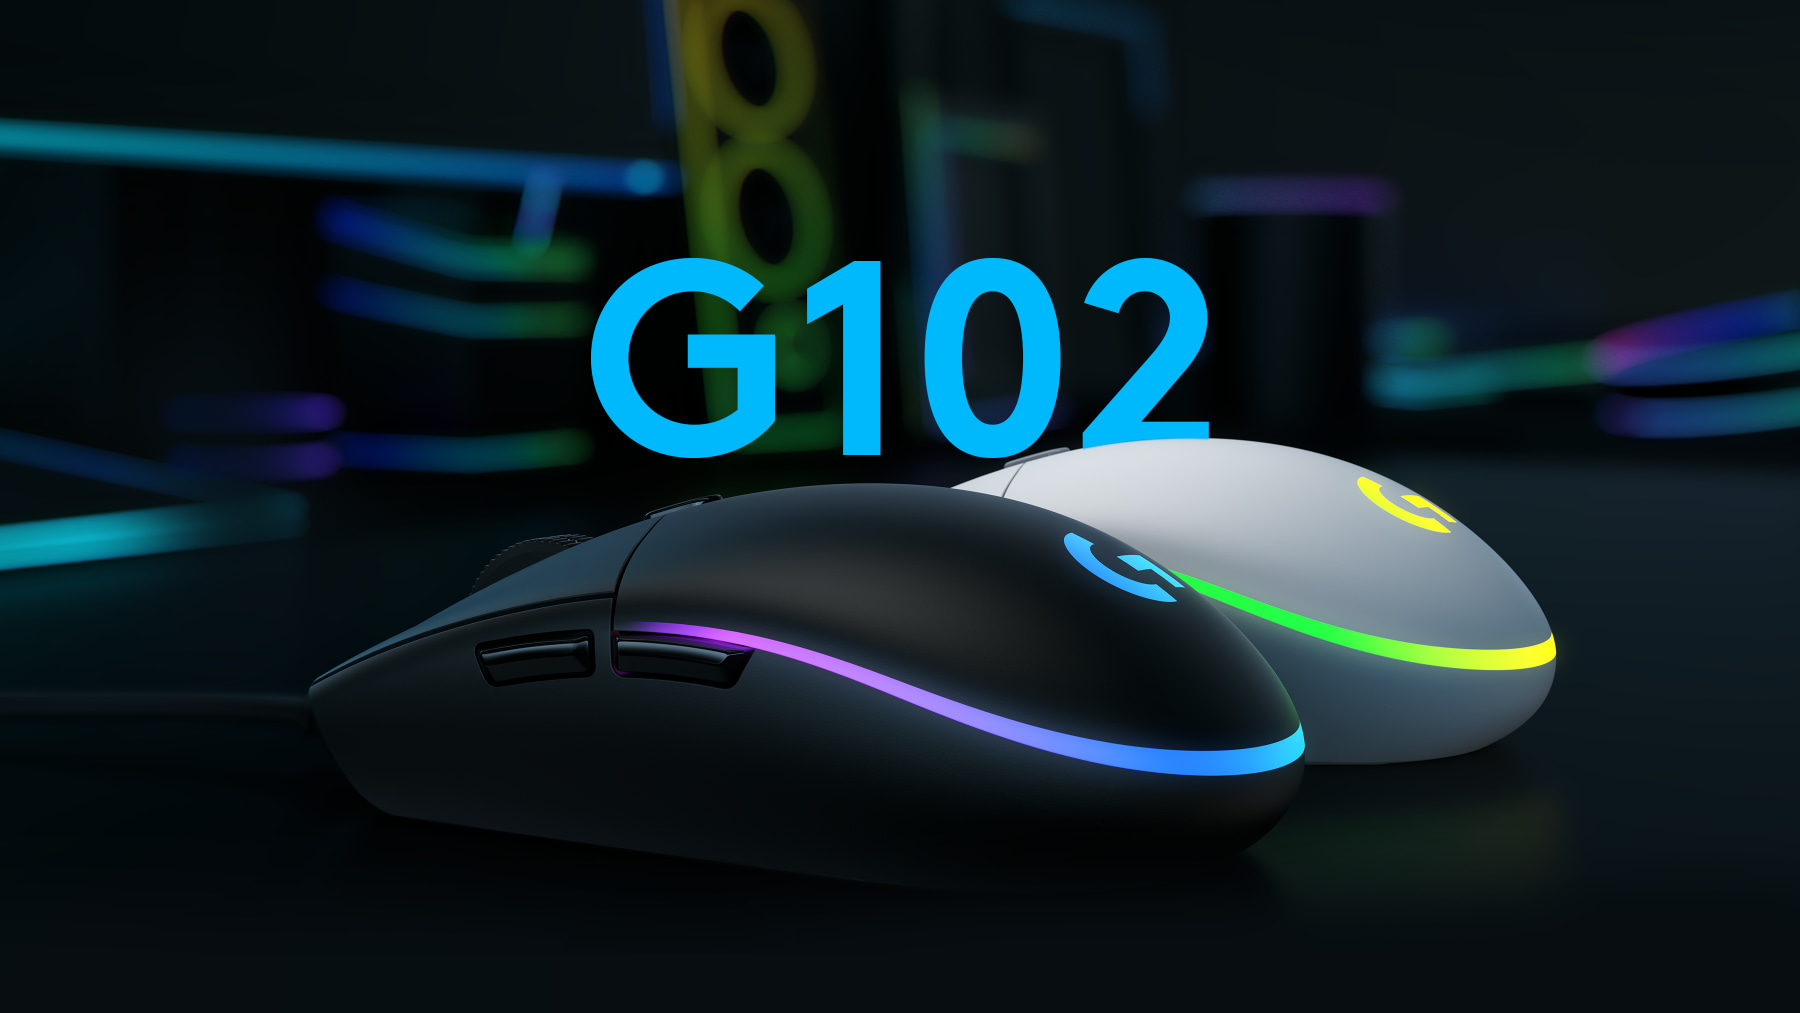 Chuột Logitech G102 Gen 2 Lightsync: bản nâng cấp từ mẫu chuột quốc dân huyền thoại